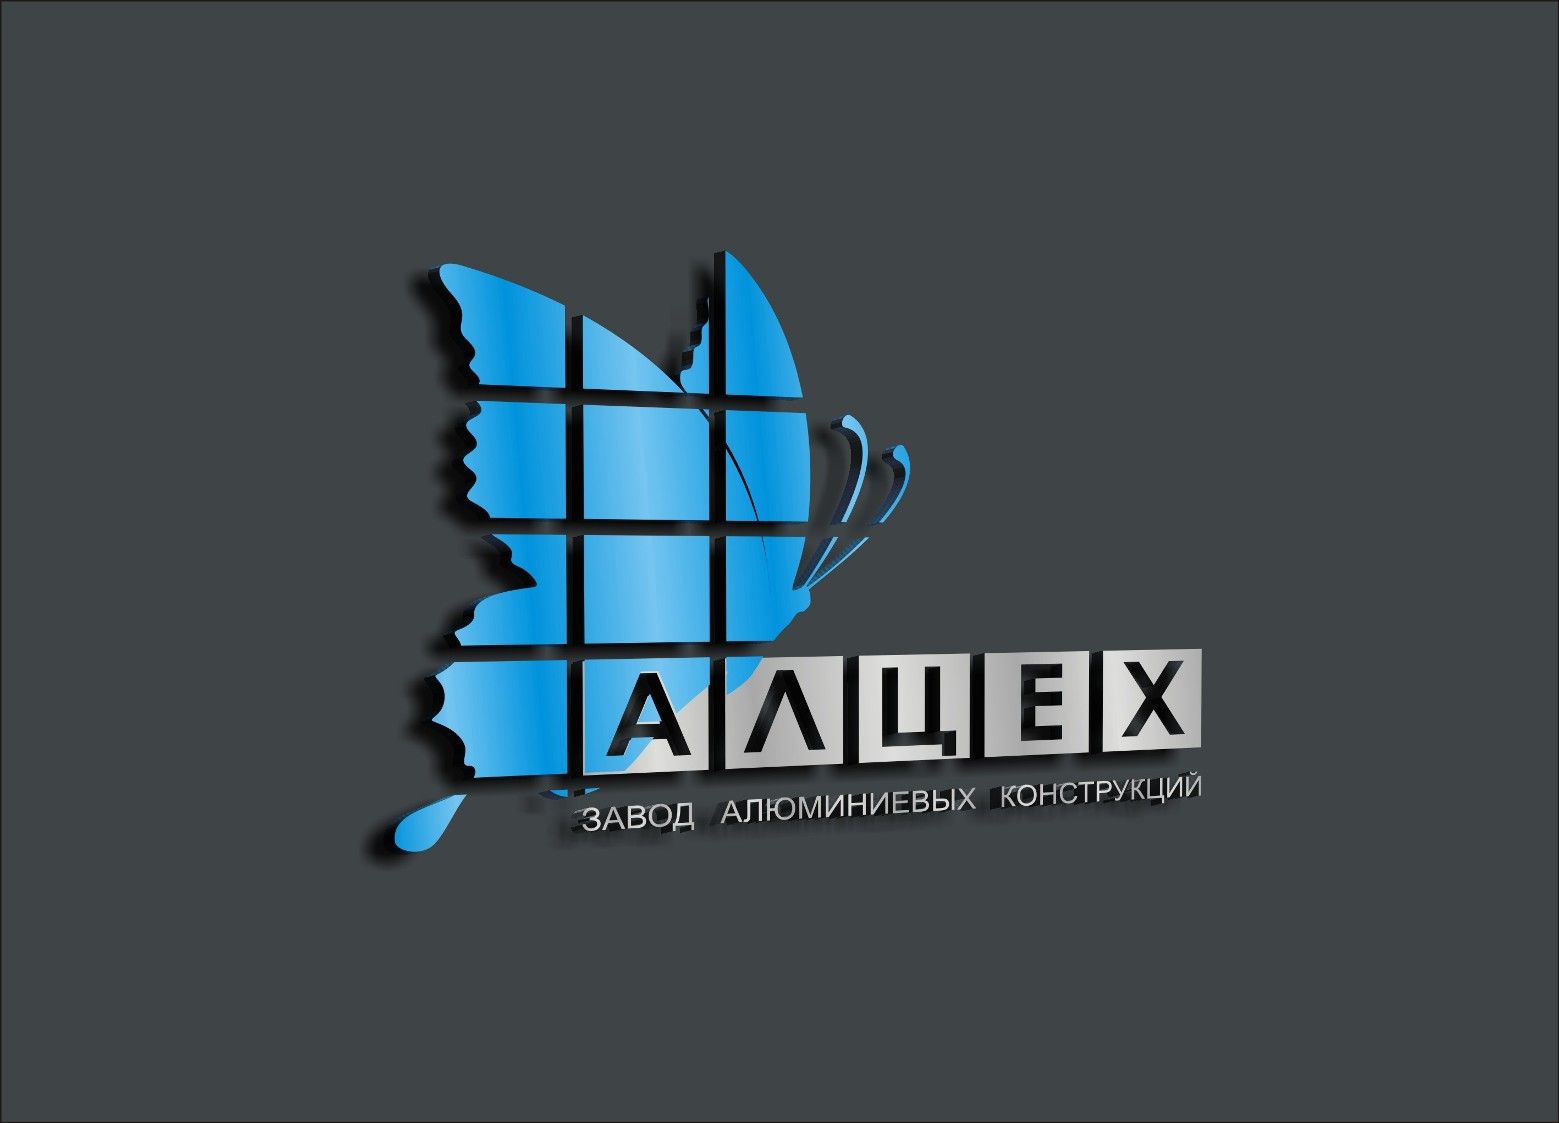 Логотип для Алцех, АЛцех, АЛЦЕХ - или на ваше усмотрение - дизайнер MagZak